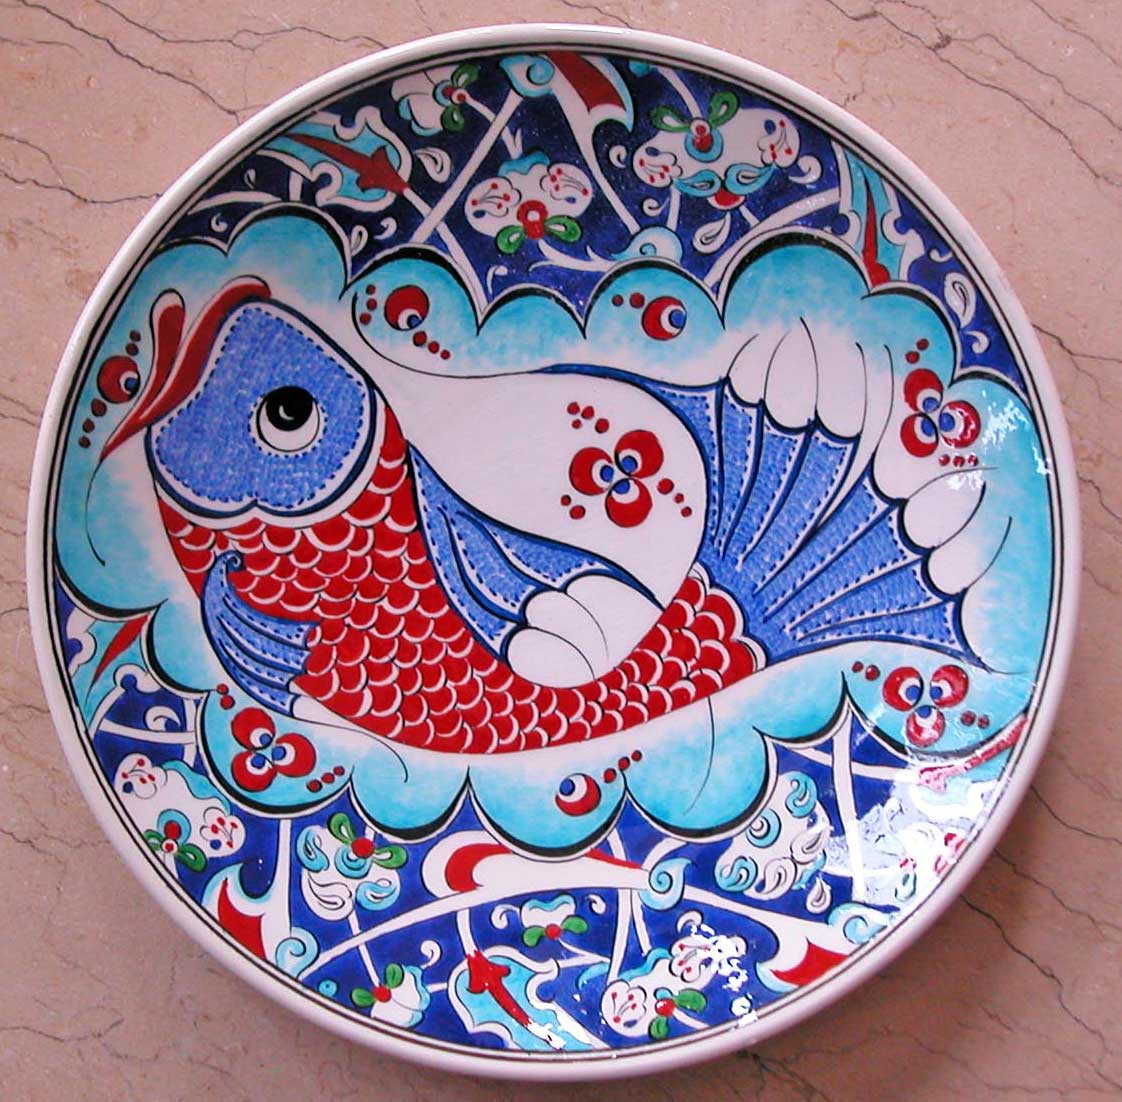 Klasik iznik Balık Desenli Çini Tabaklar Duvar ve Vitrin Süslemesi İçin Dekoratif Hediyeler Çini sanatı örnekleri 25cm Çini Tabak Desenleri